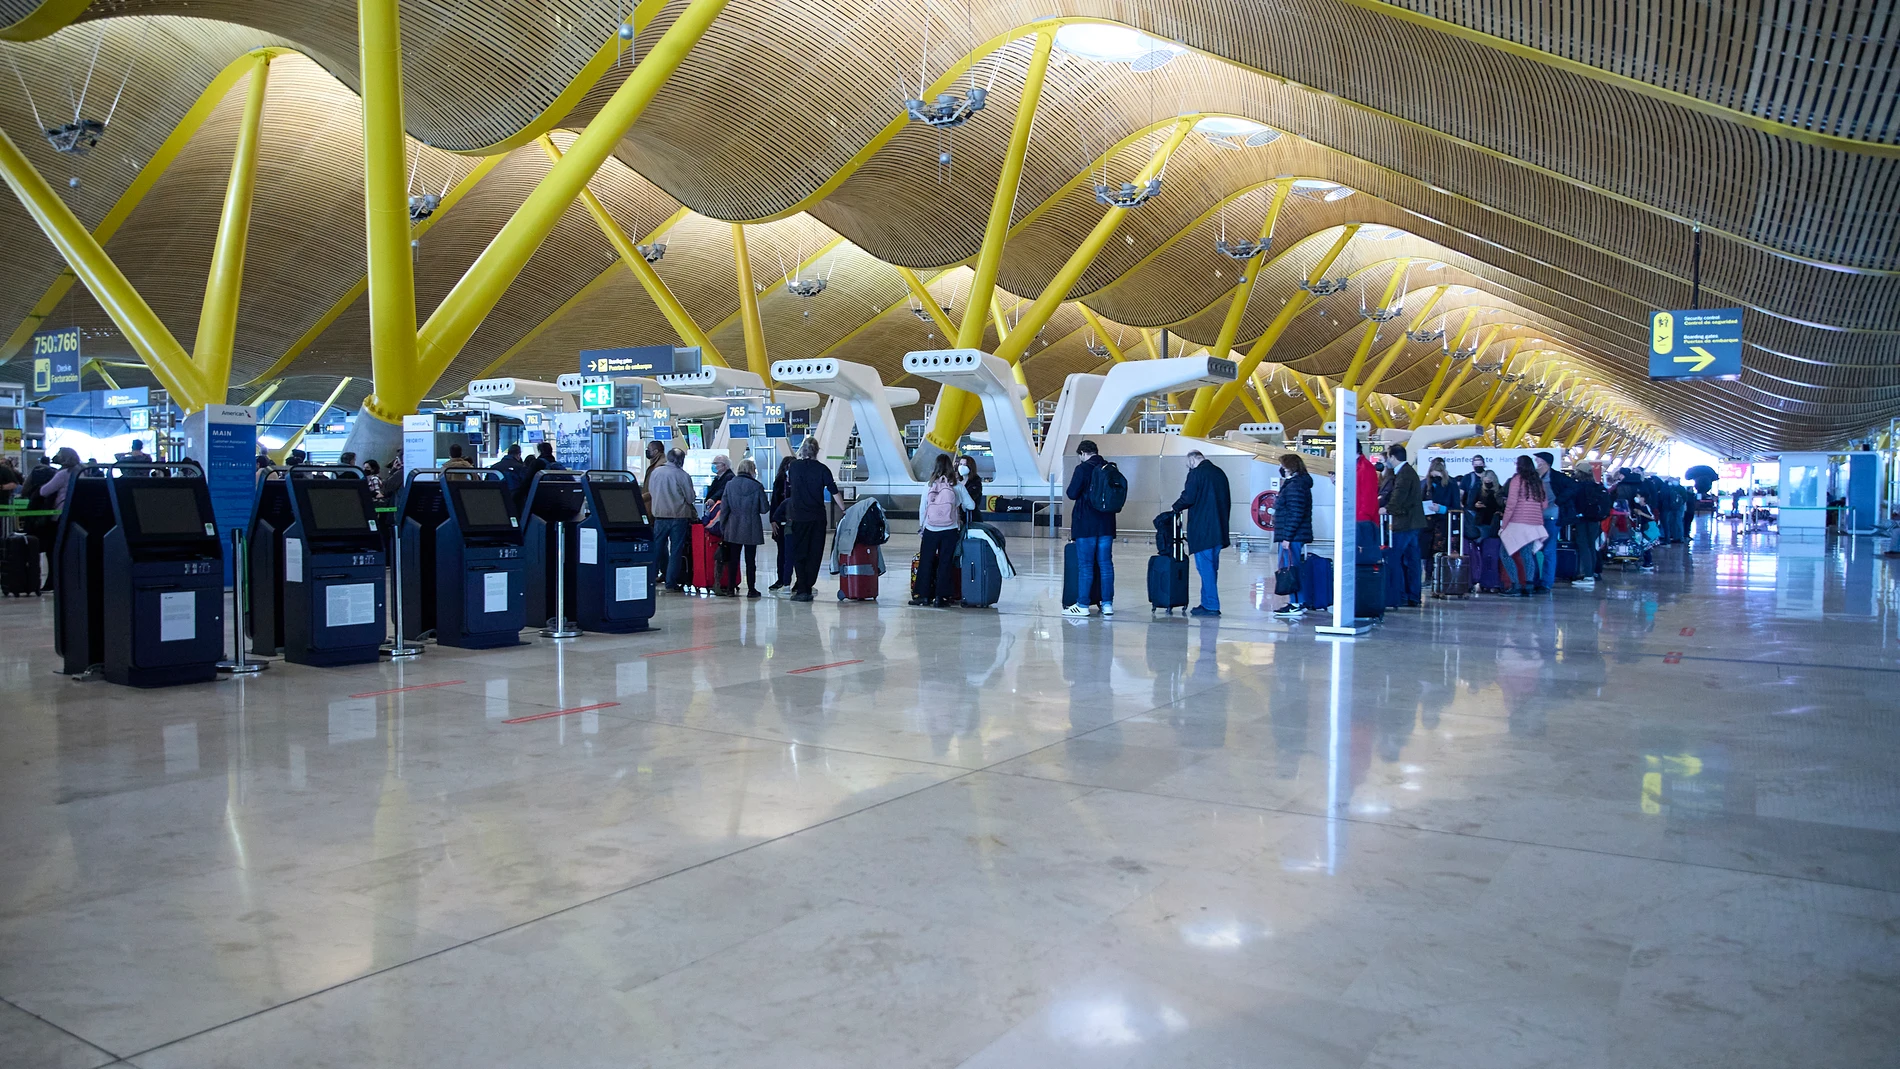 Varias personas hacen cola en el aeropuerto Adolfo Suárez, Madrid-Barajas